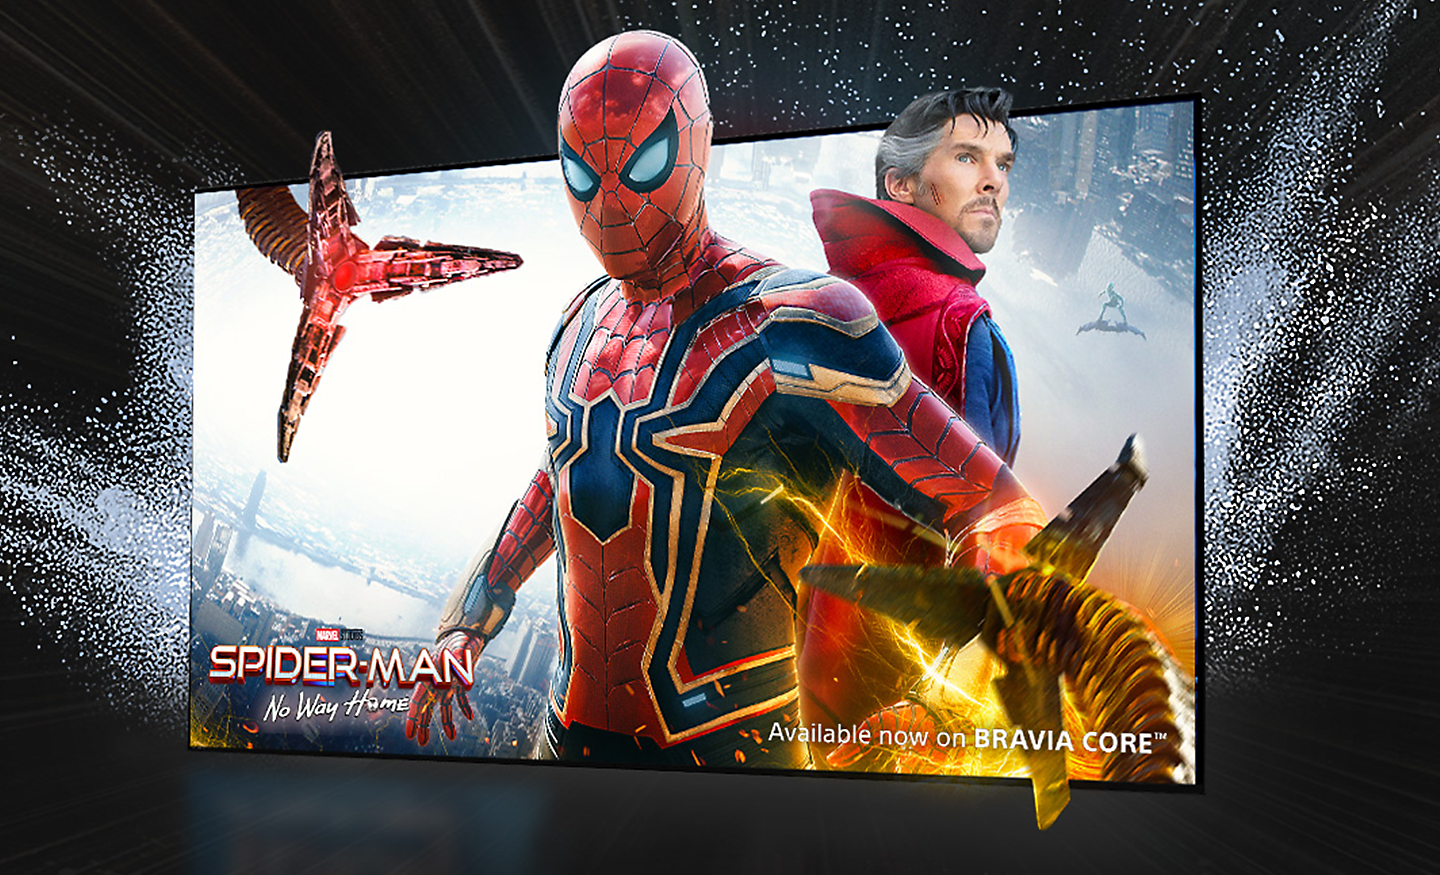 Fernsehbildschirm, der den Film SPIDER-MAN: No Way Home zeigt, wobei Spider-Man aus dem Bildschirm herausragt